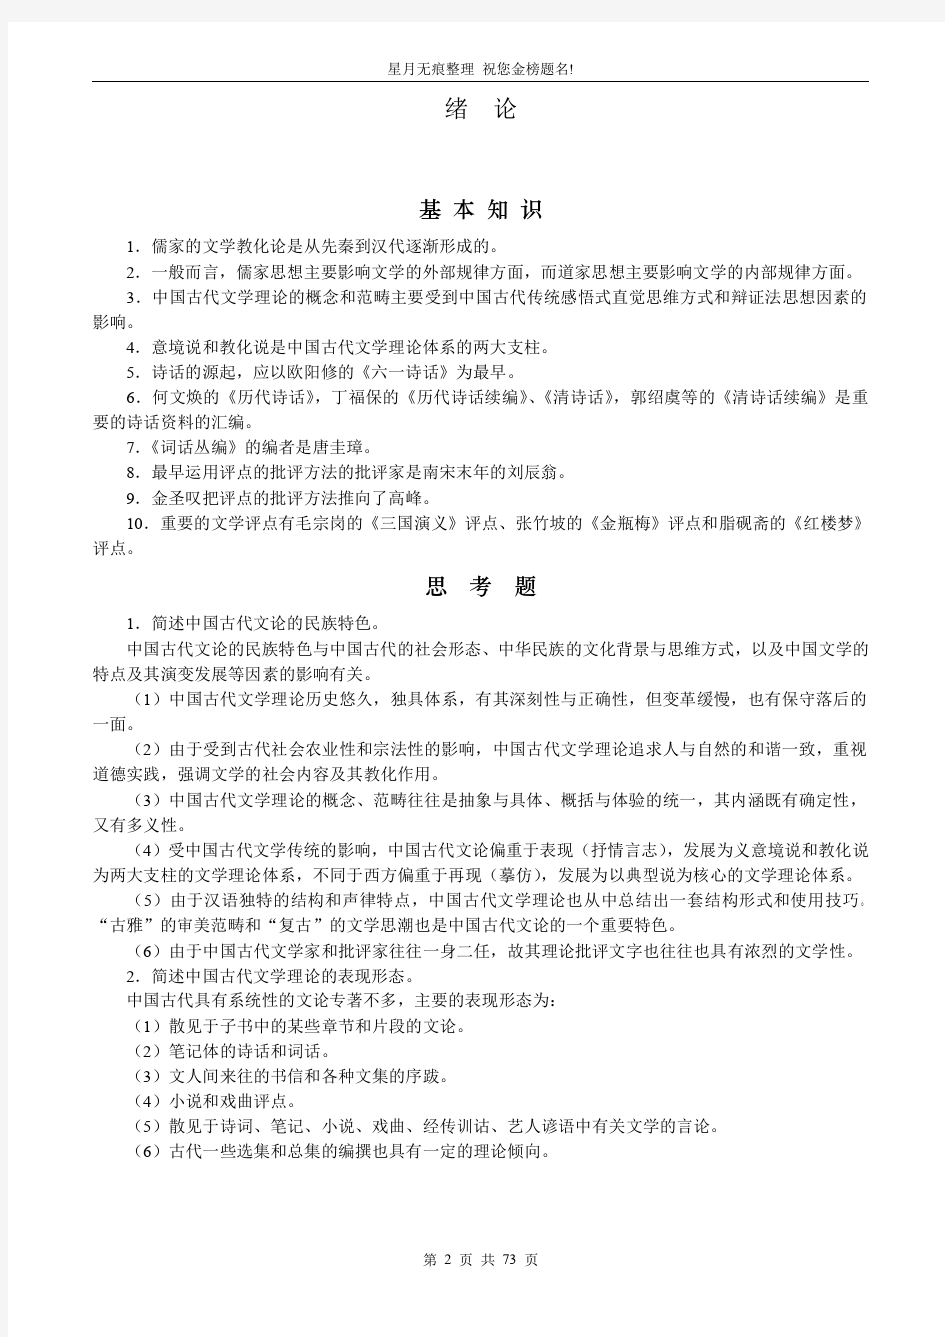 【中山大学】《中国古代文学批评史》考研备考习题集含答案(完美打印版)